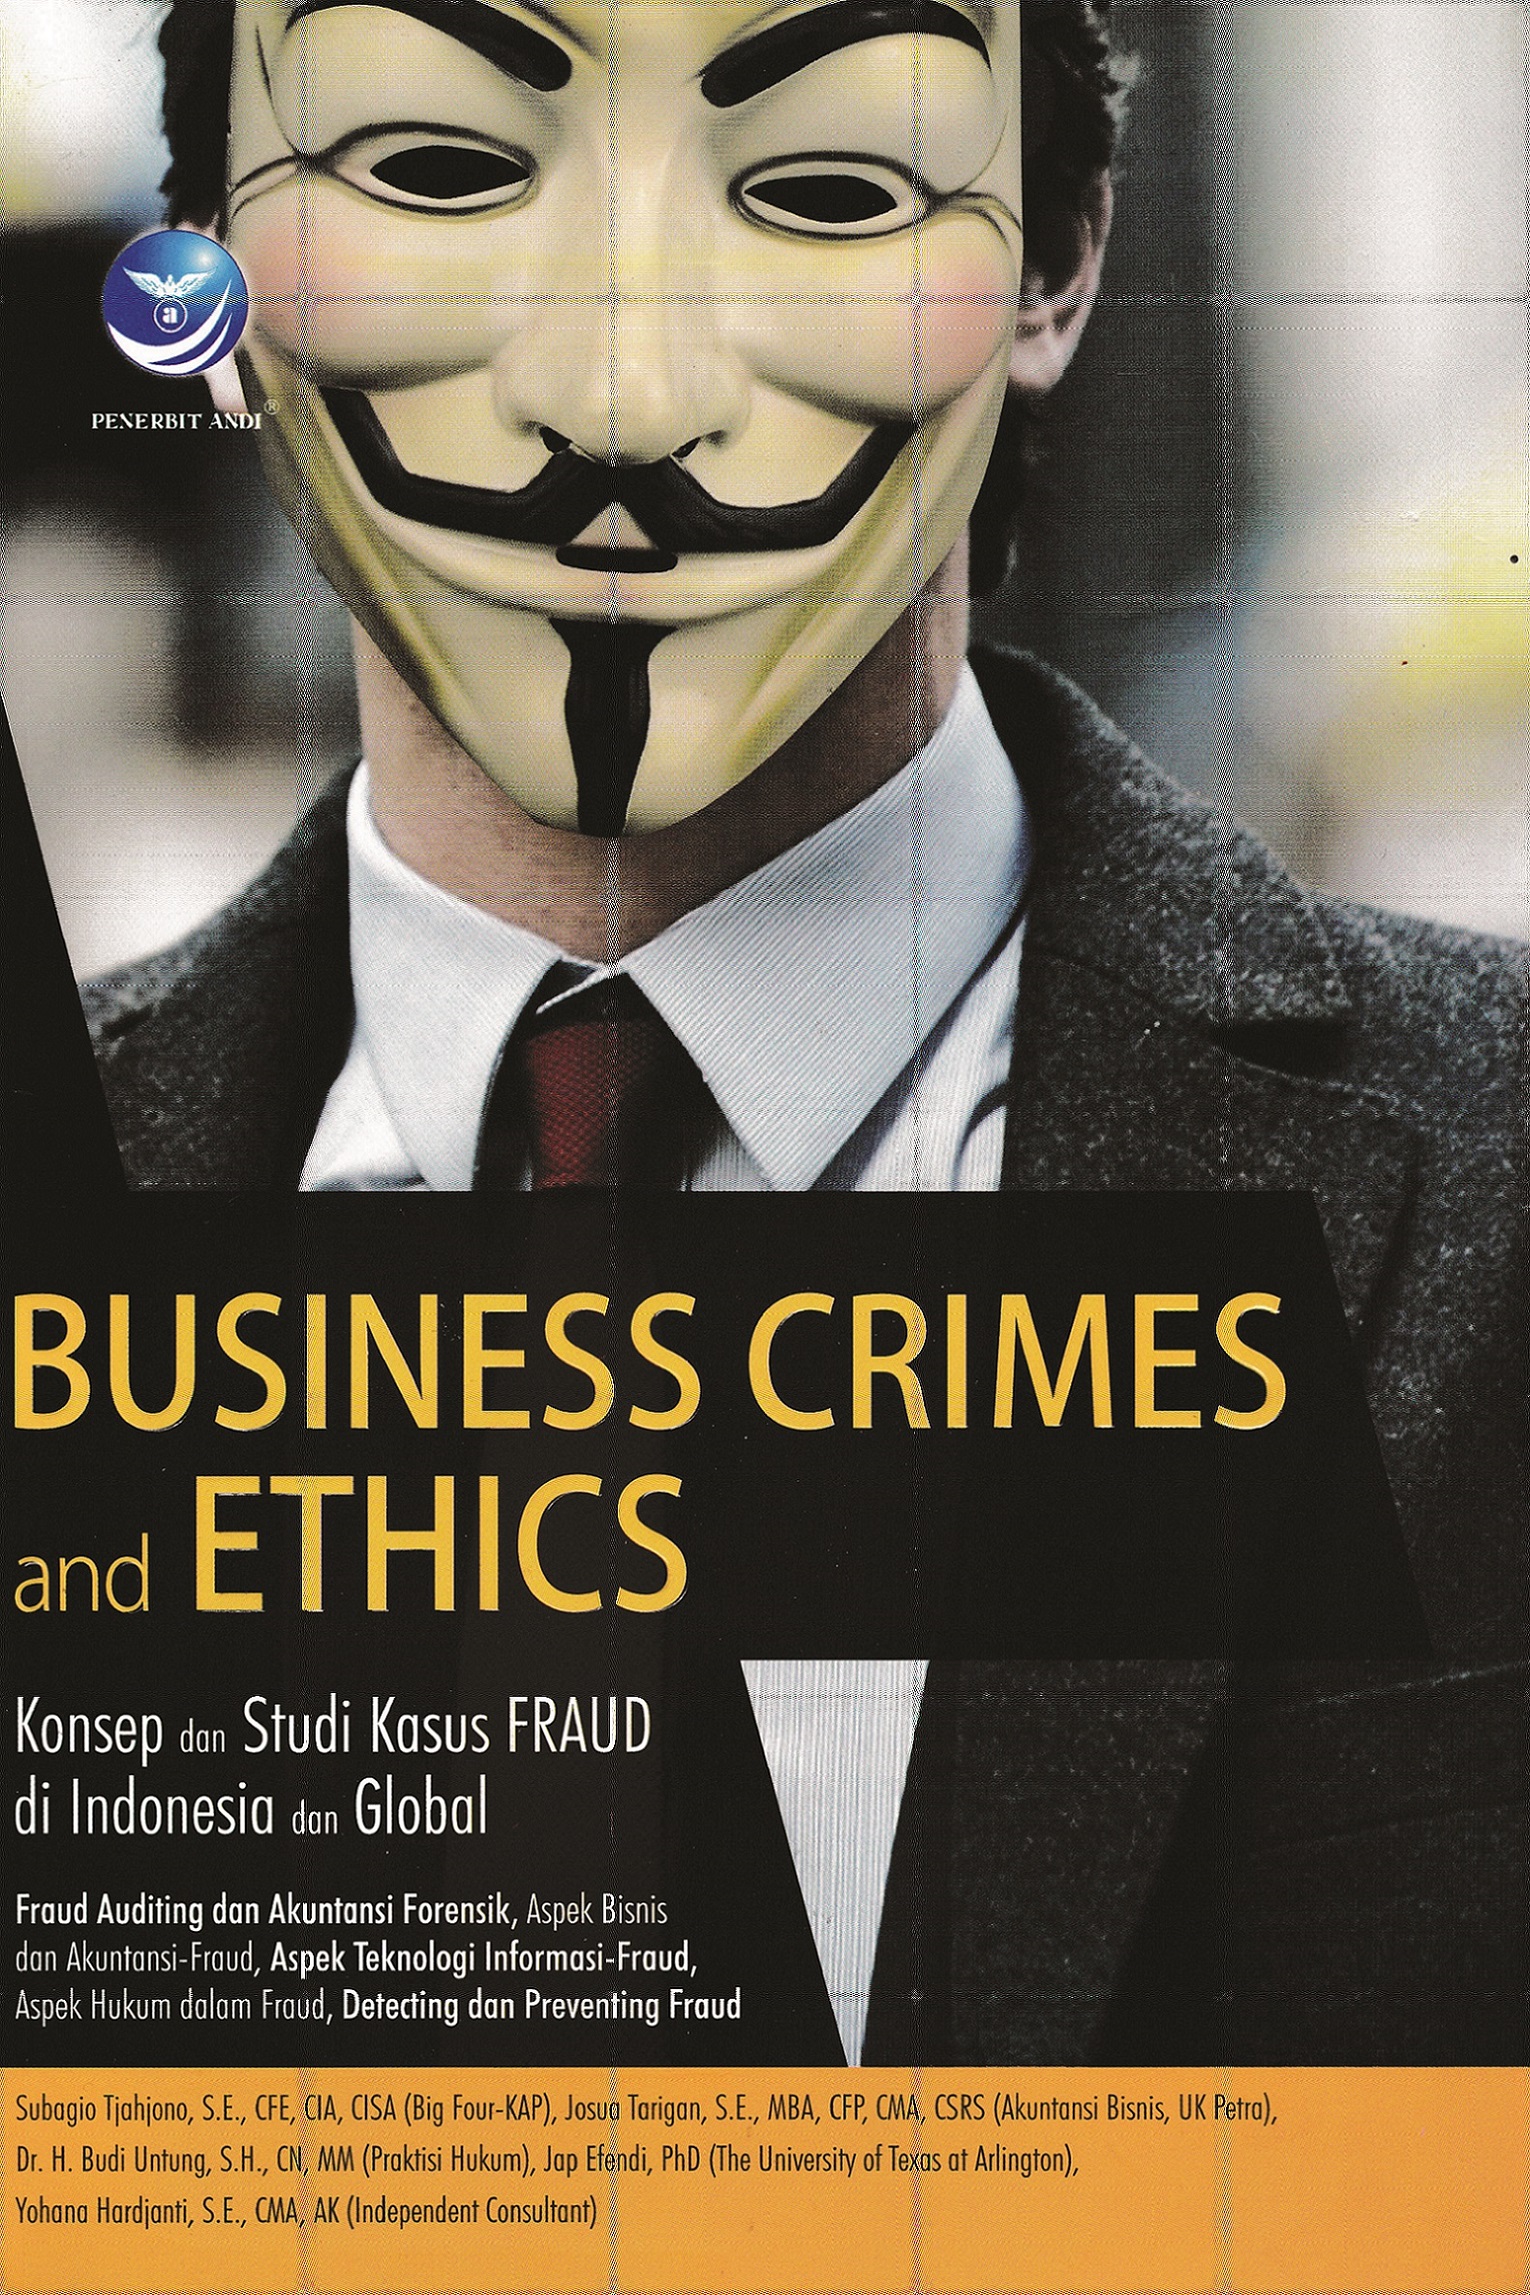 Business crimes and ethics, konsep dan studi kasus fraud di Indonesia dan global [sumber elektronis]